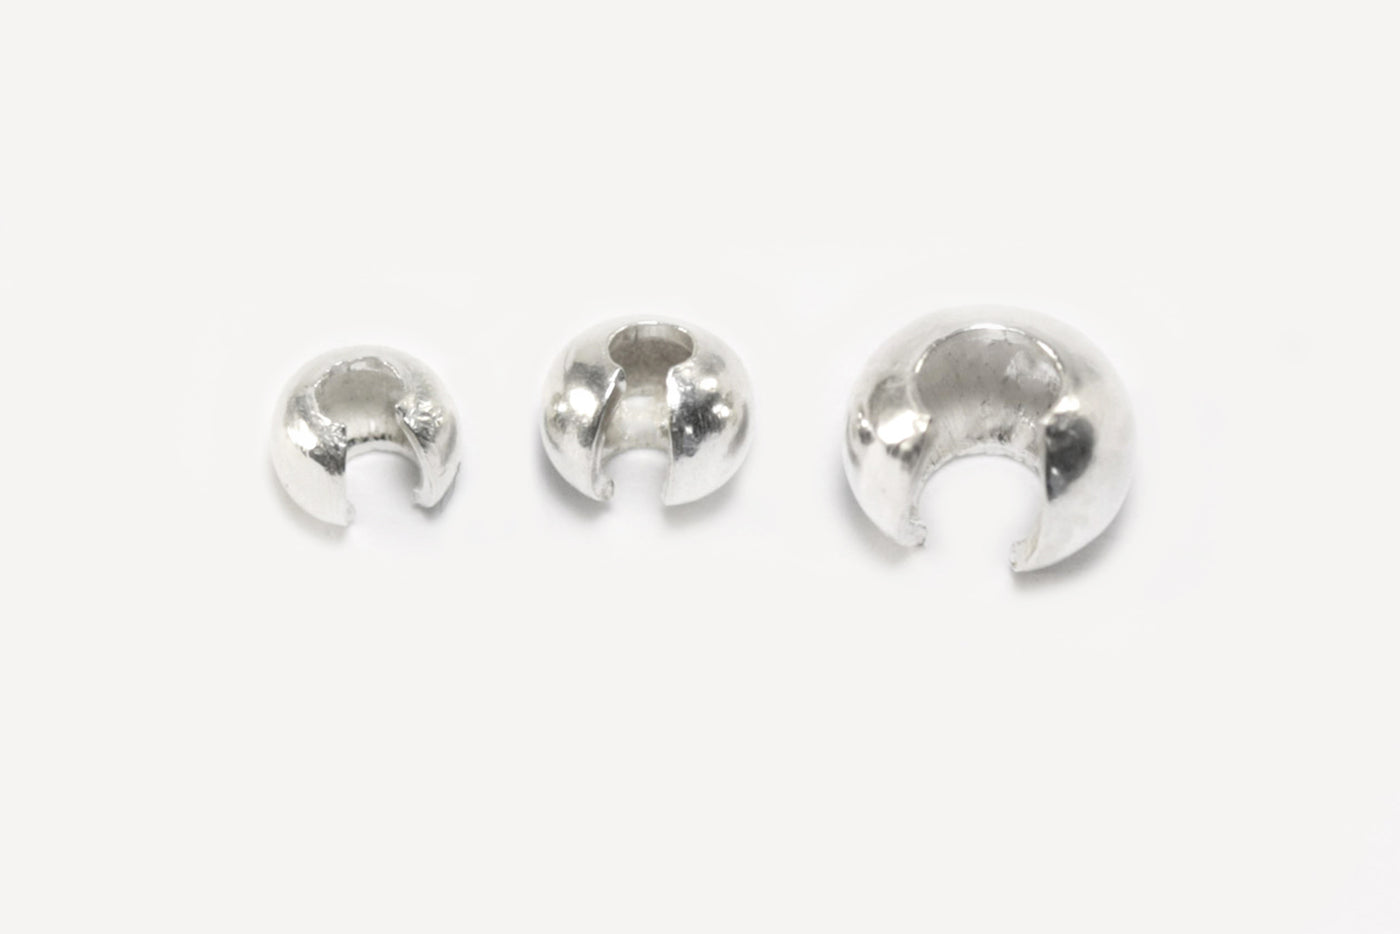 Kaschierperlen aus 925 Silber, Ø 4 mm